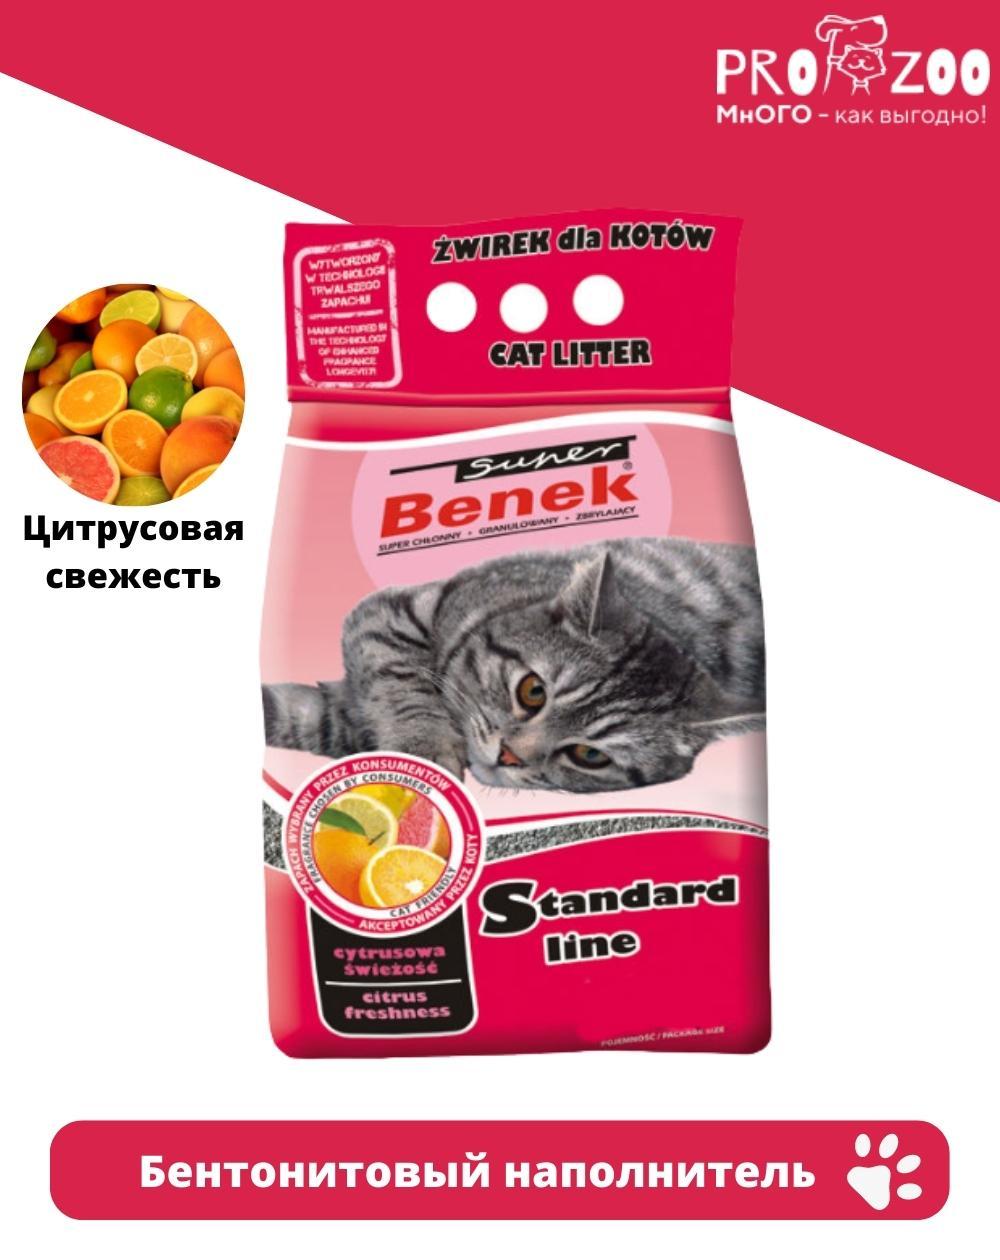 предпросмотр Наполнитель Super Benek для туалета для кошек, цитрусовая свежесть, 4 кг  1